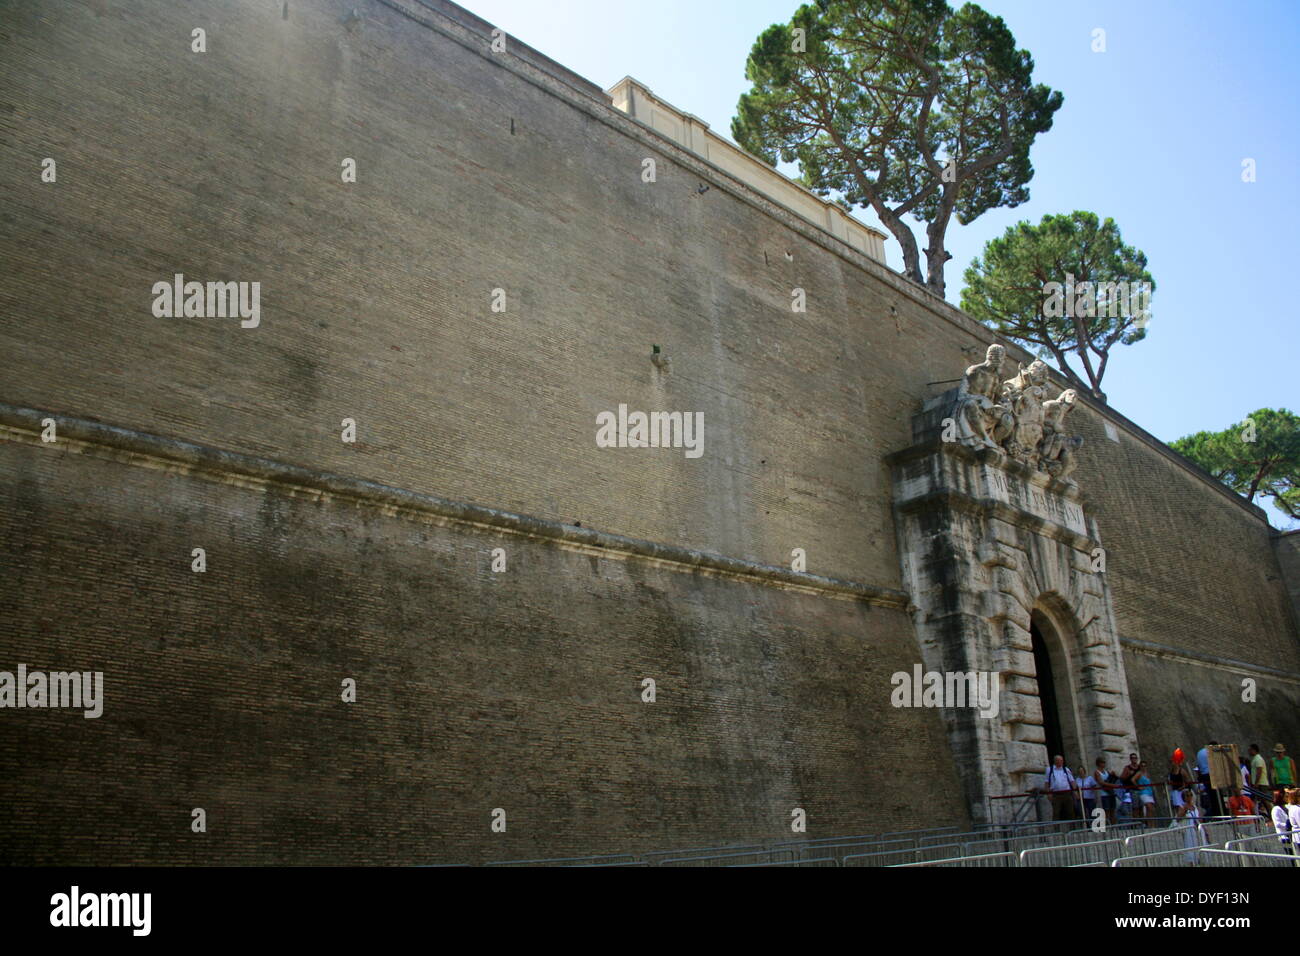 Uno dei muri attorno a Piazza San Pietro, una grande piazza che si trova di fronte alla Basilica di San Pietro in Vaticano, Italia. La parete ha una altamente decorativo entrata con il lavoro di soccorso. Foto Stock